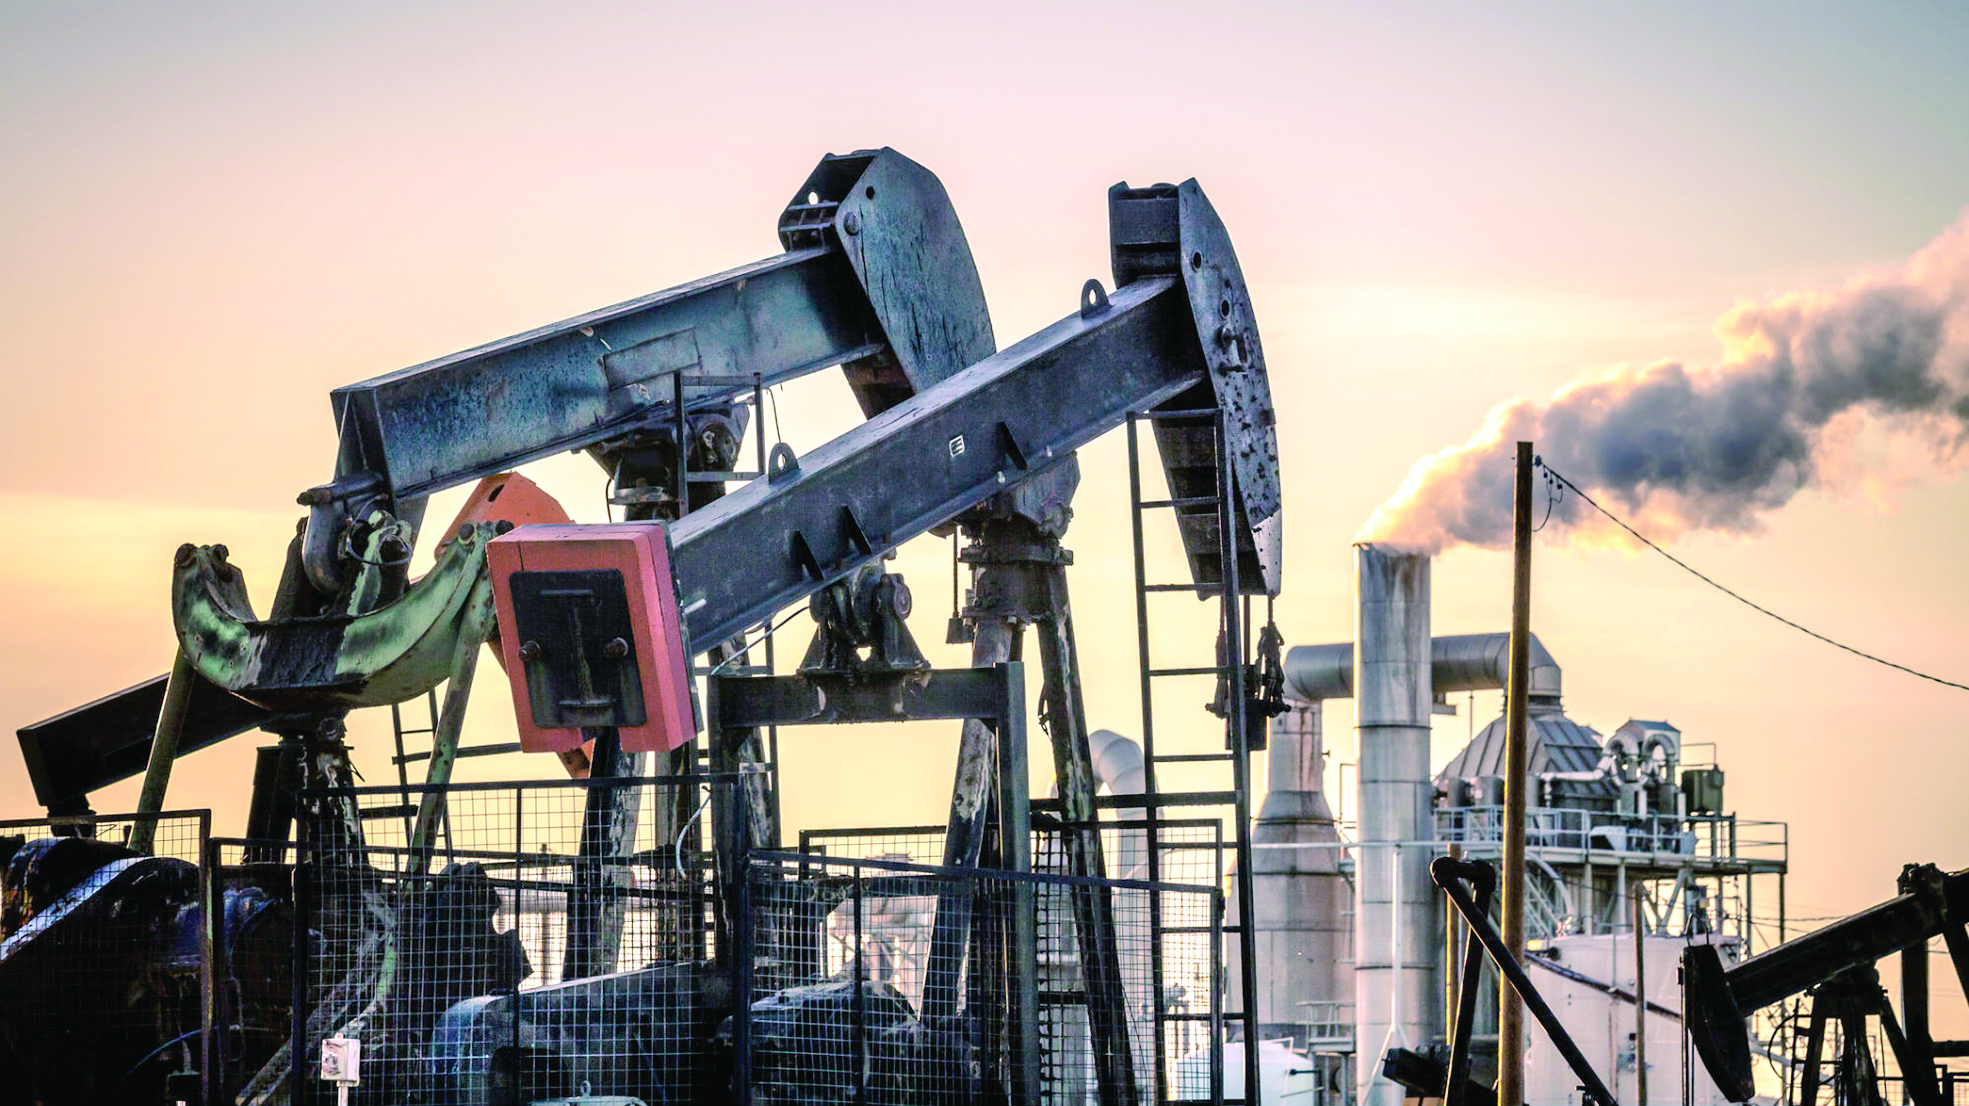 النفط يرتفع وتوقعات بتوازن العرض والطلب في 2018